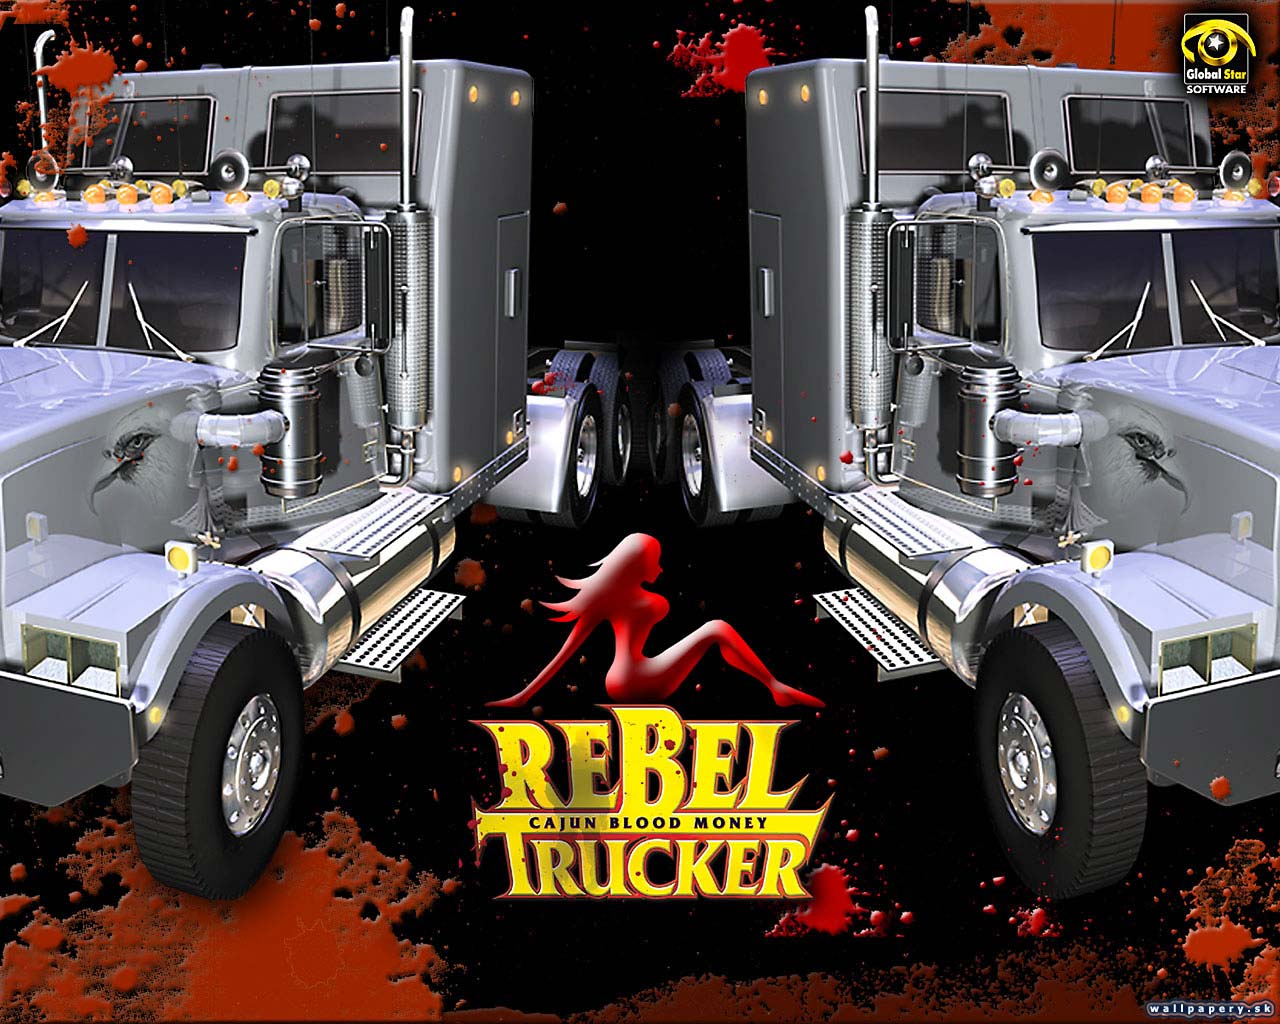 Rebel Trucker: Cajun Blood Money - wallpaper 2